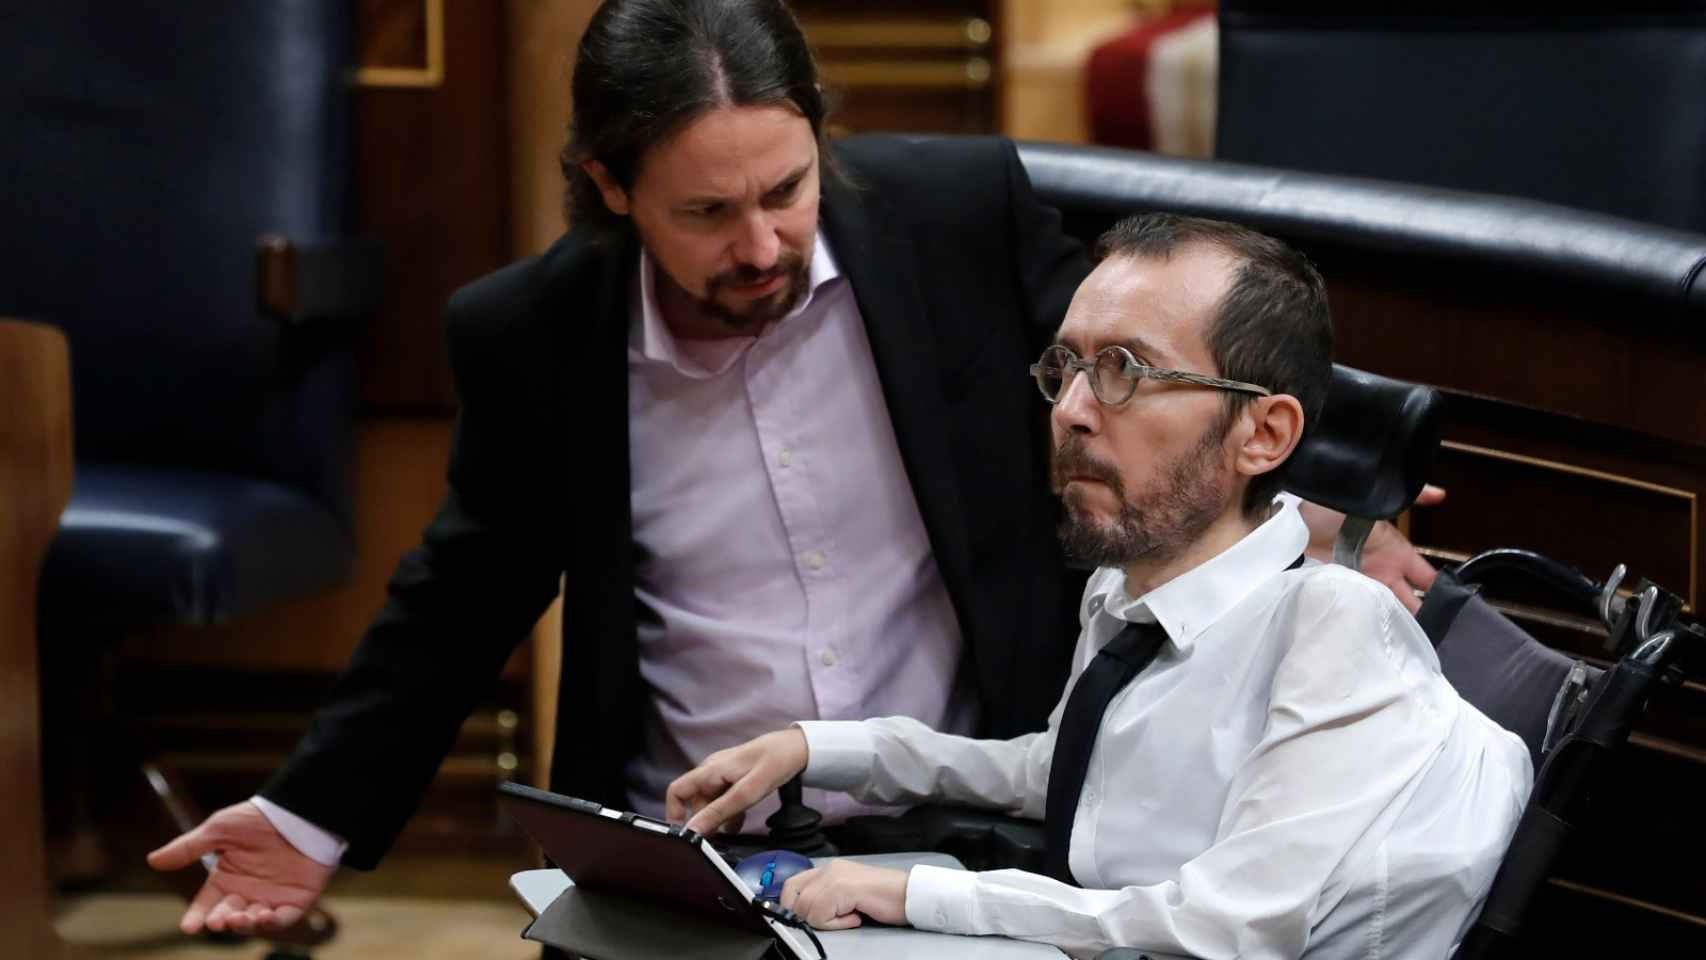 https://s6.eestatic.com/2020/02/11/espana/politica/Pablo_Echenique-Pablo_Iglesias-Podemos-Eutanasia-Congreso_de_los_Diputados-Politica_466715399_144937881_1706x960.jpg